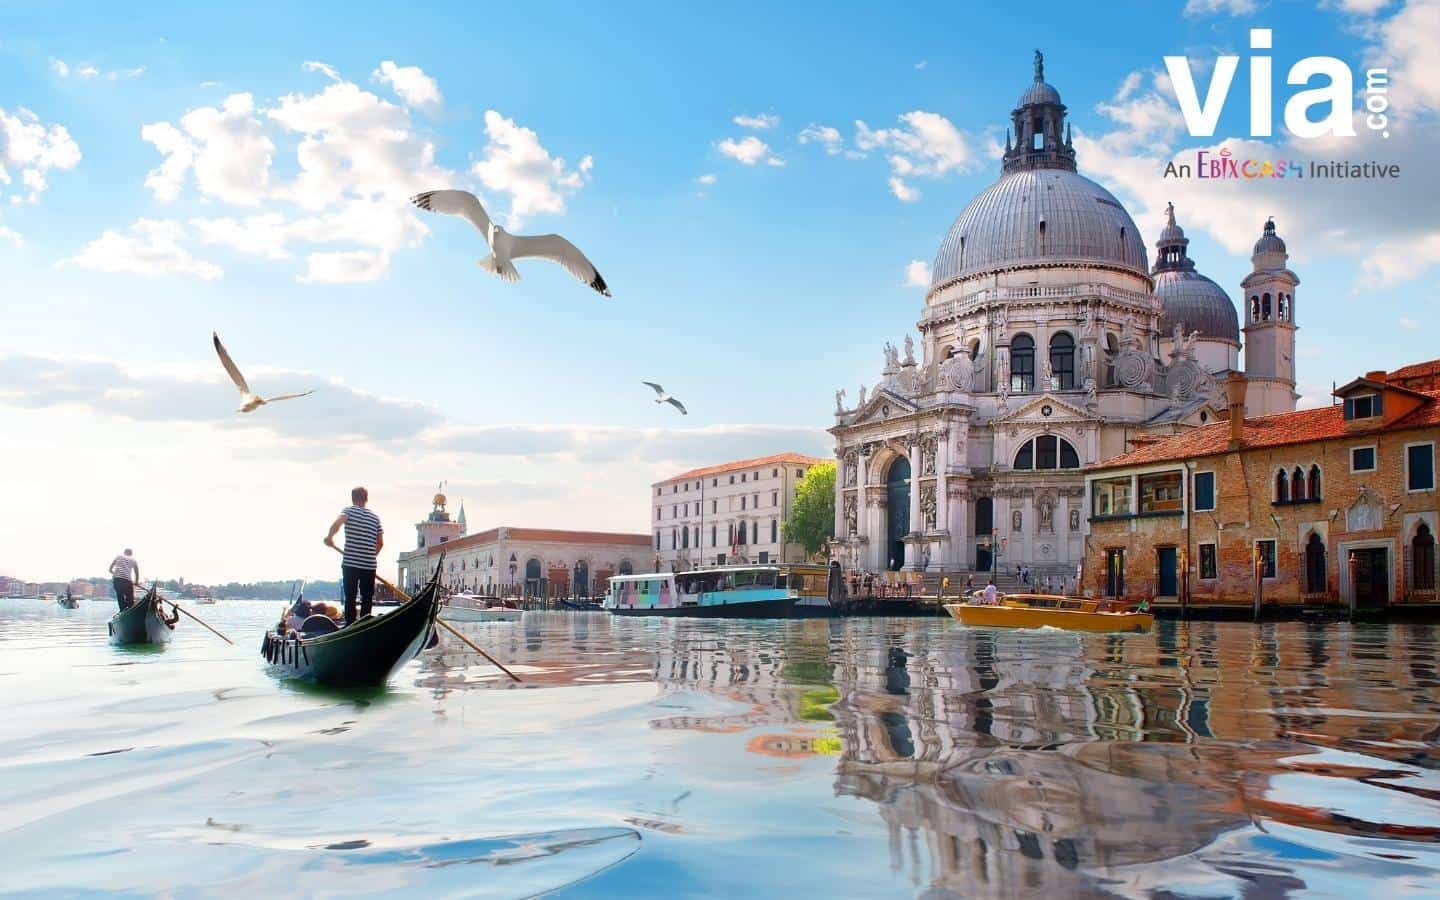 Romantisnya Venesia, Kota Tua Italia yang Bisa Direkomendasikan